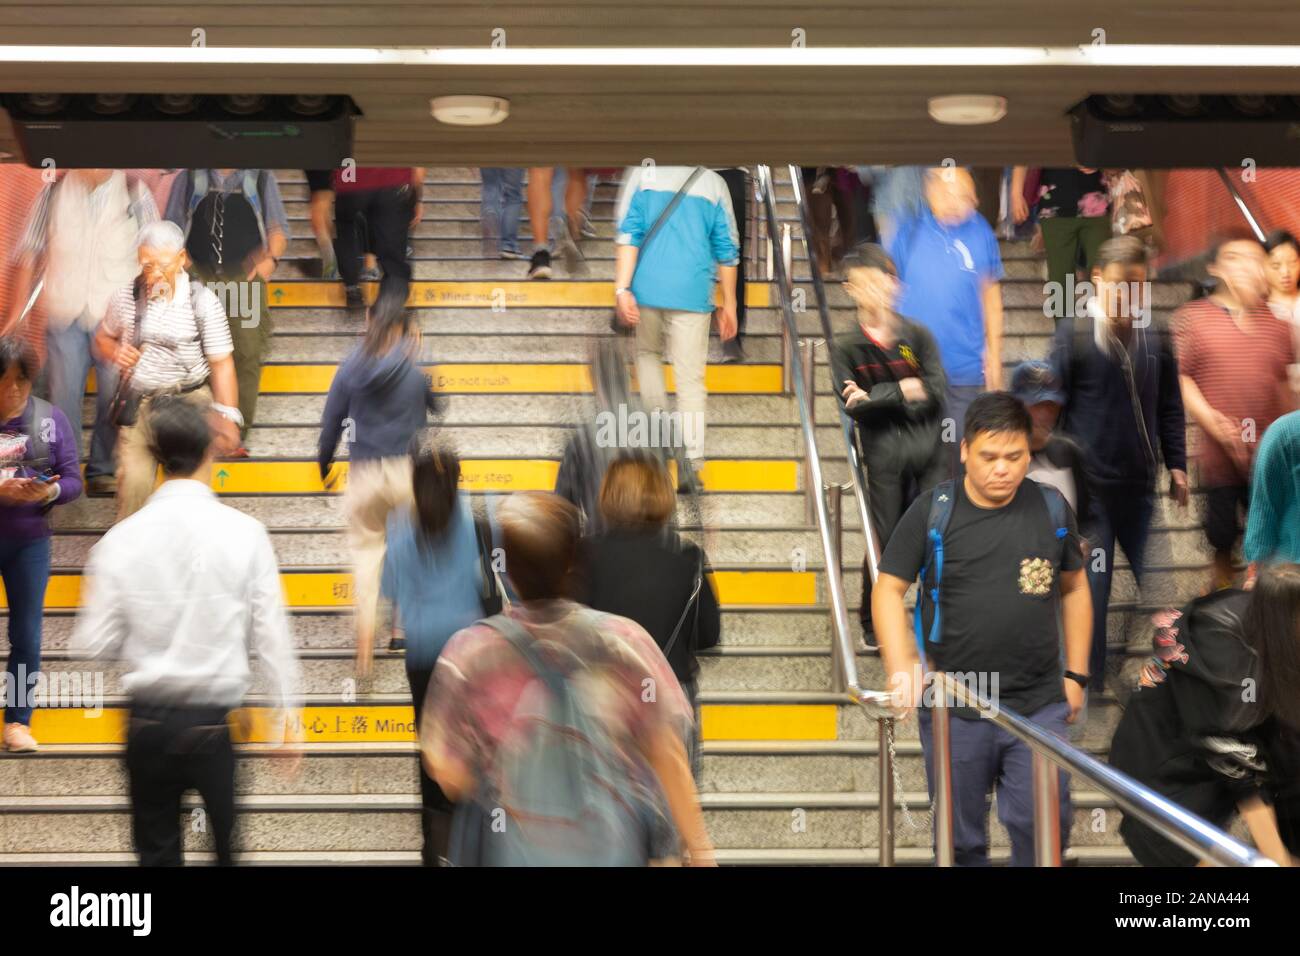 Menschen in Hongkong - Bewegungsunschärfe-Bild von Menschen auf einer Treppe - Konzept des geschäftigen Alltags und Hongkongs Lebensstil, Kowloon Hong Kong Asia Stockfoto